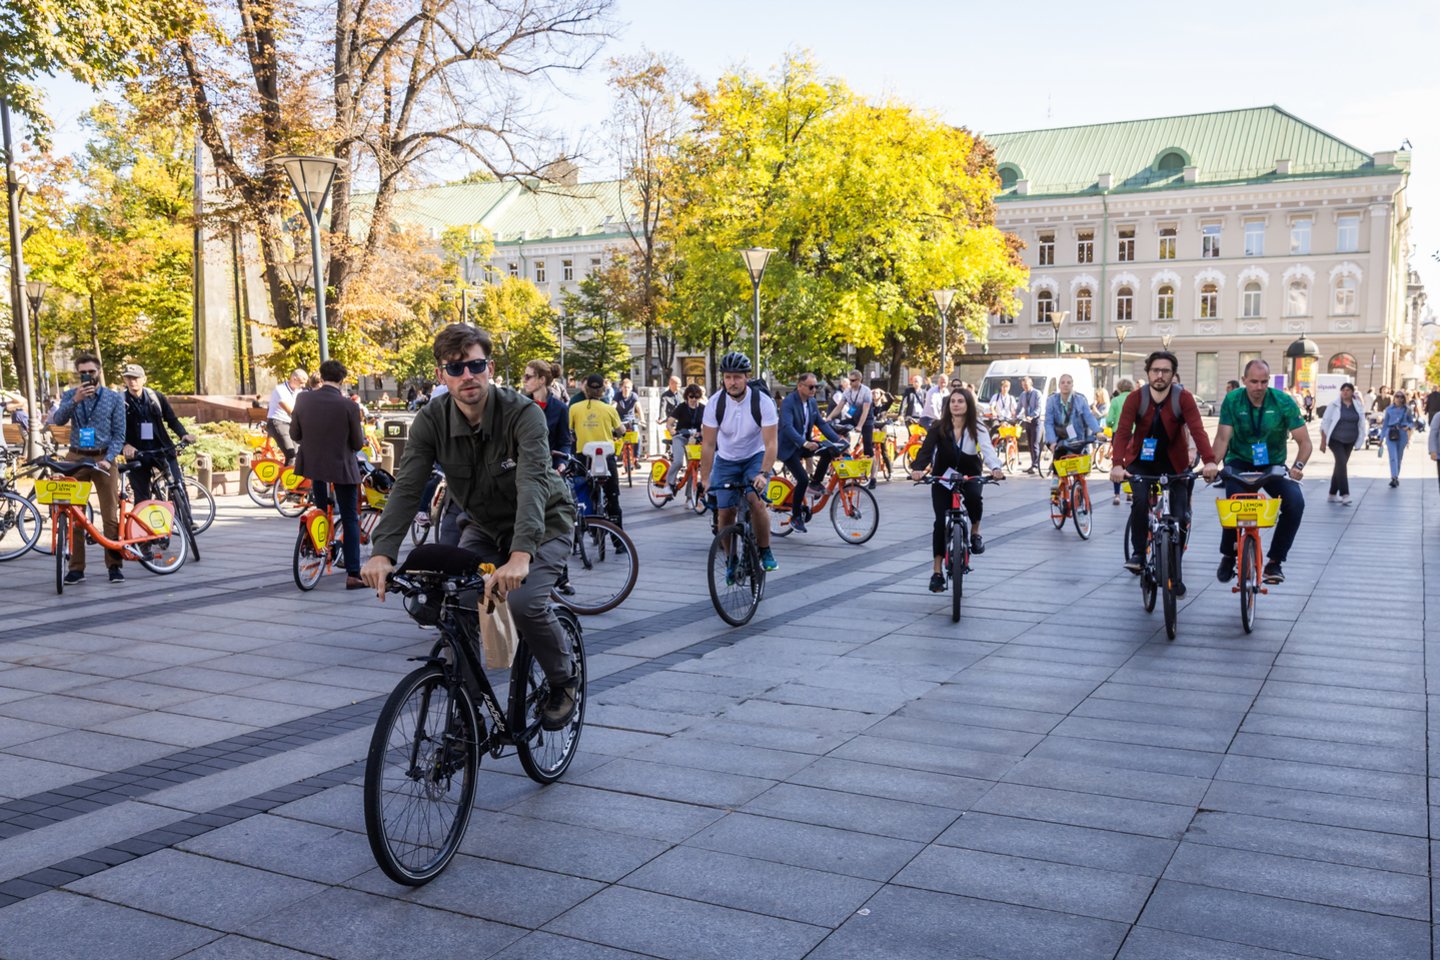 Lietuvoje vis didesnis dėmesys skiriamas dviračių infrastruktūros planavimui ir projektavimui bei spartesnei dviračių ir pėsčiųjų takų plėtrai.